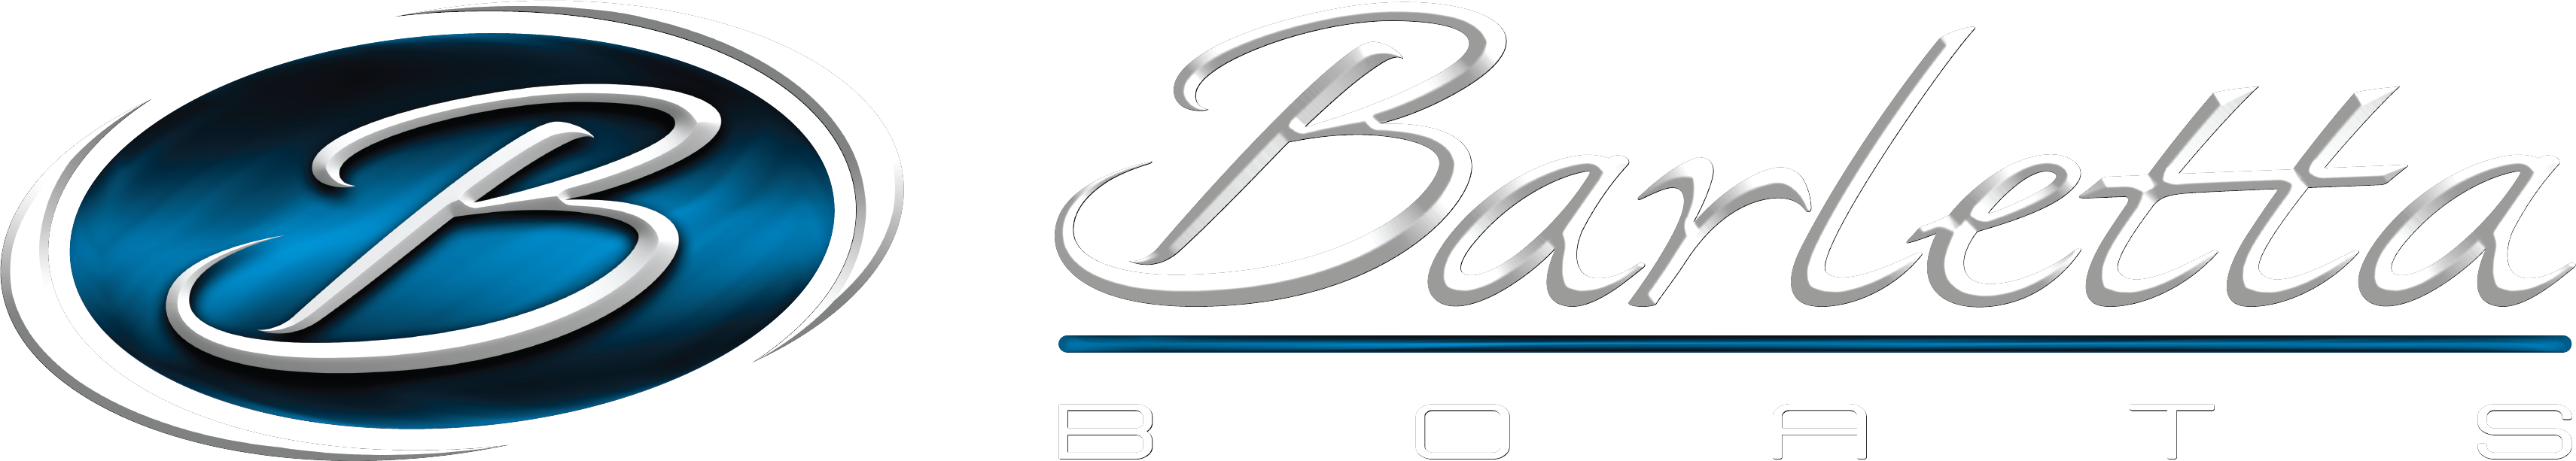 Barletta boats logo